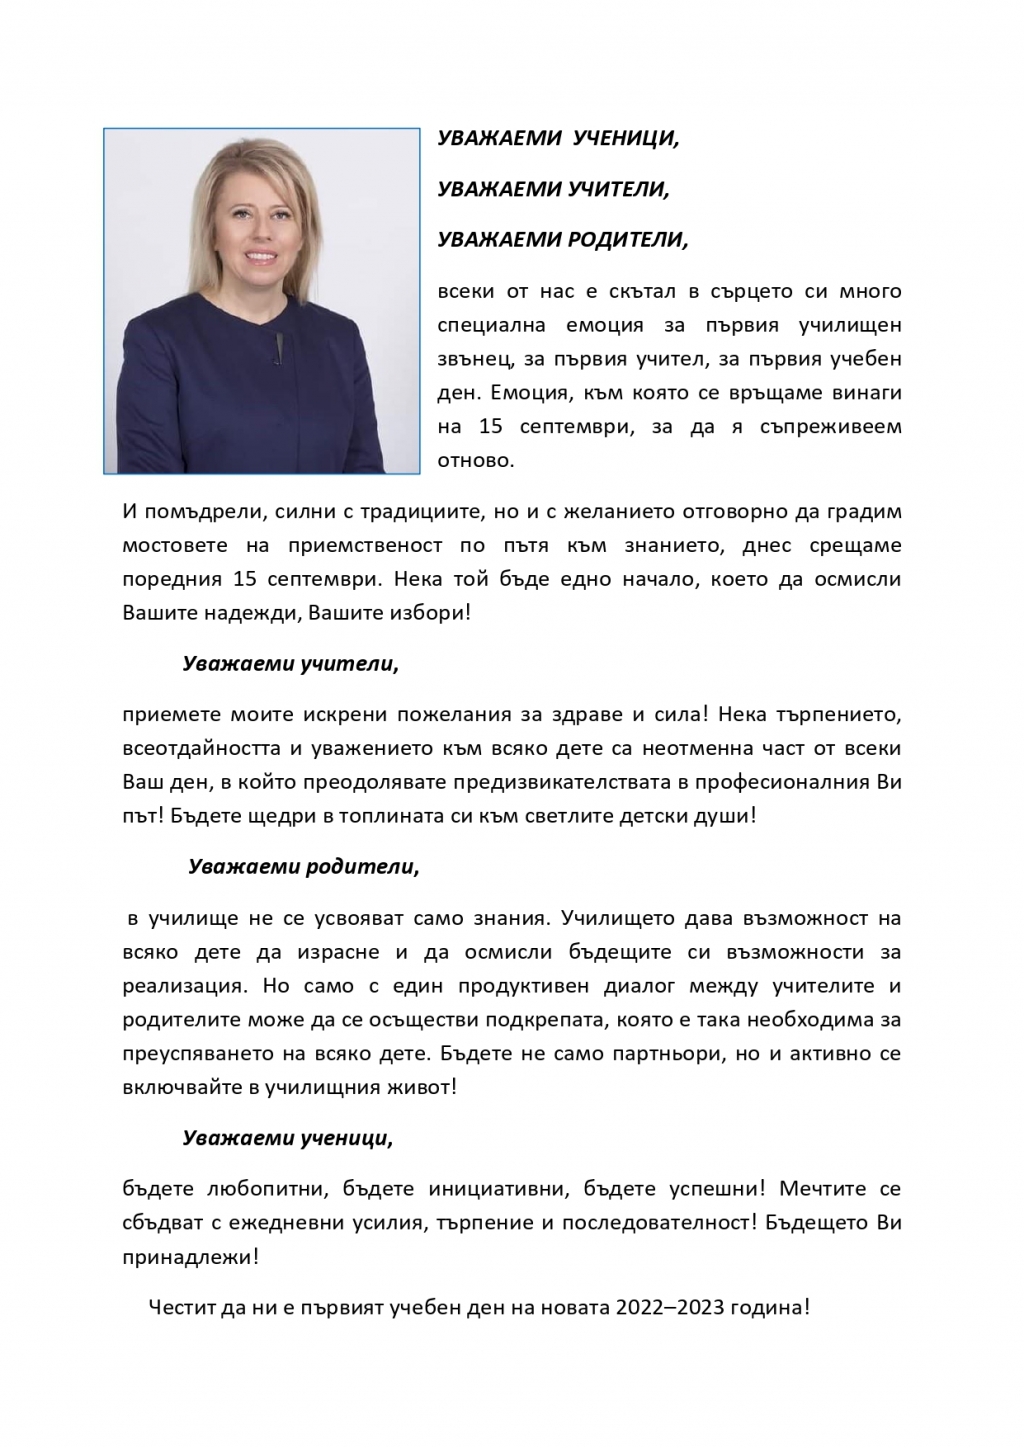 Кметът Соня Георгиева: Нека 15 септември бъде начало, което да осмисли Вашите надежди, Вашите избори